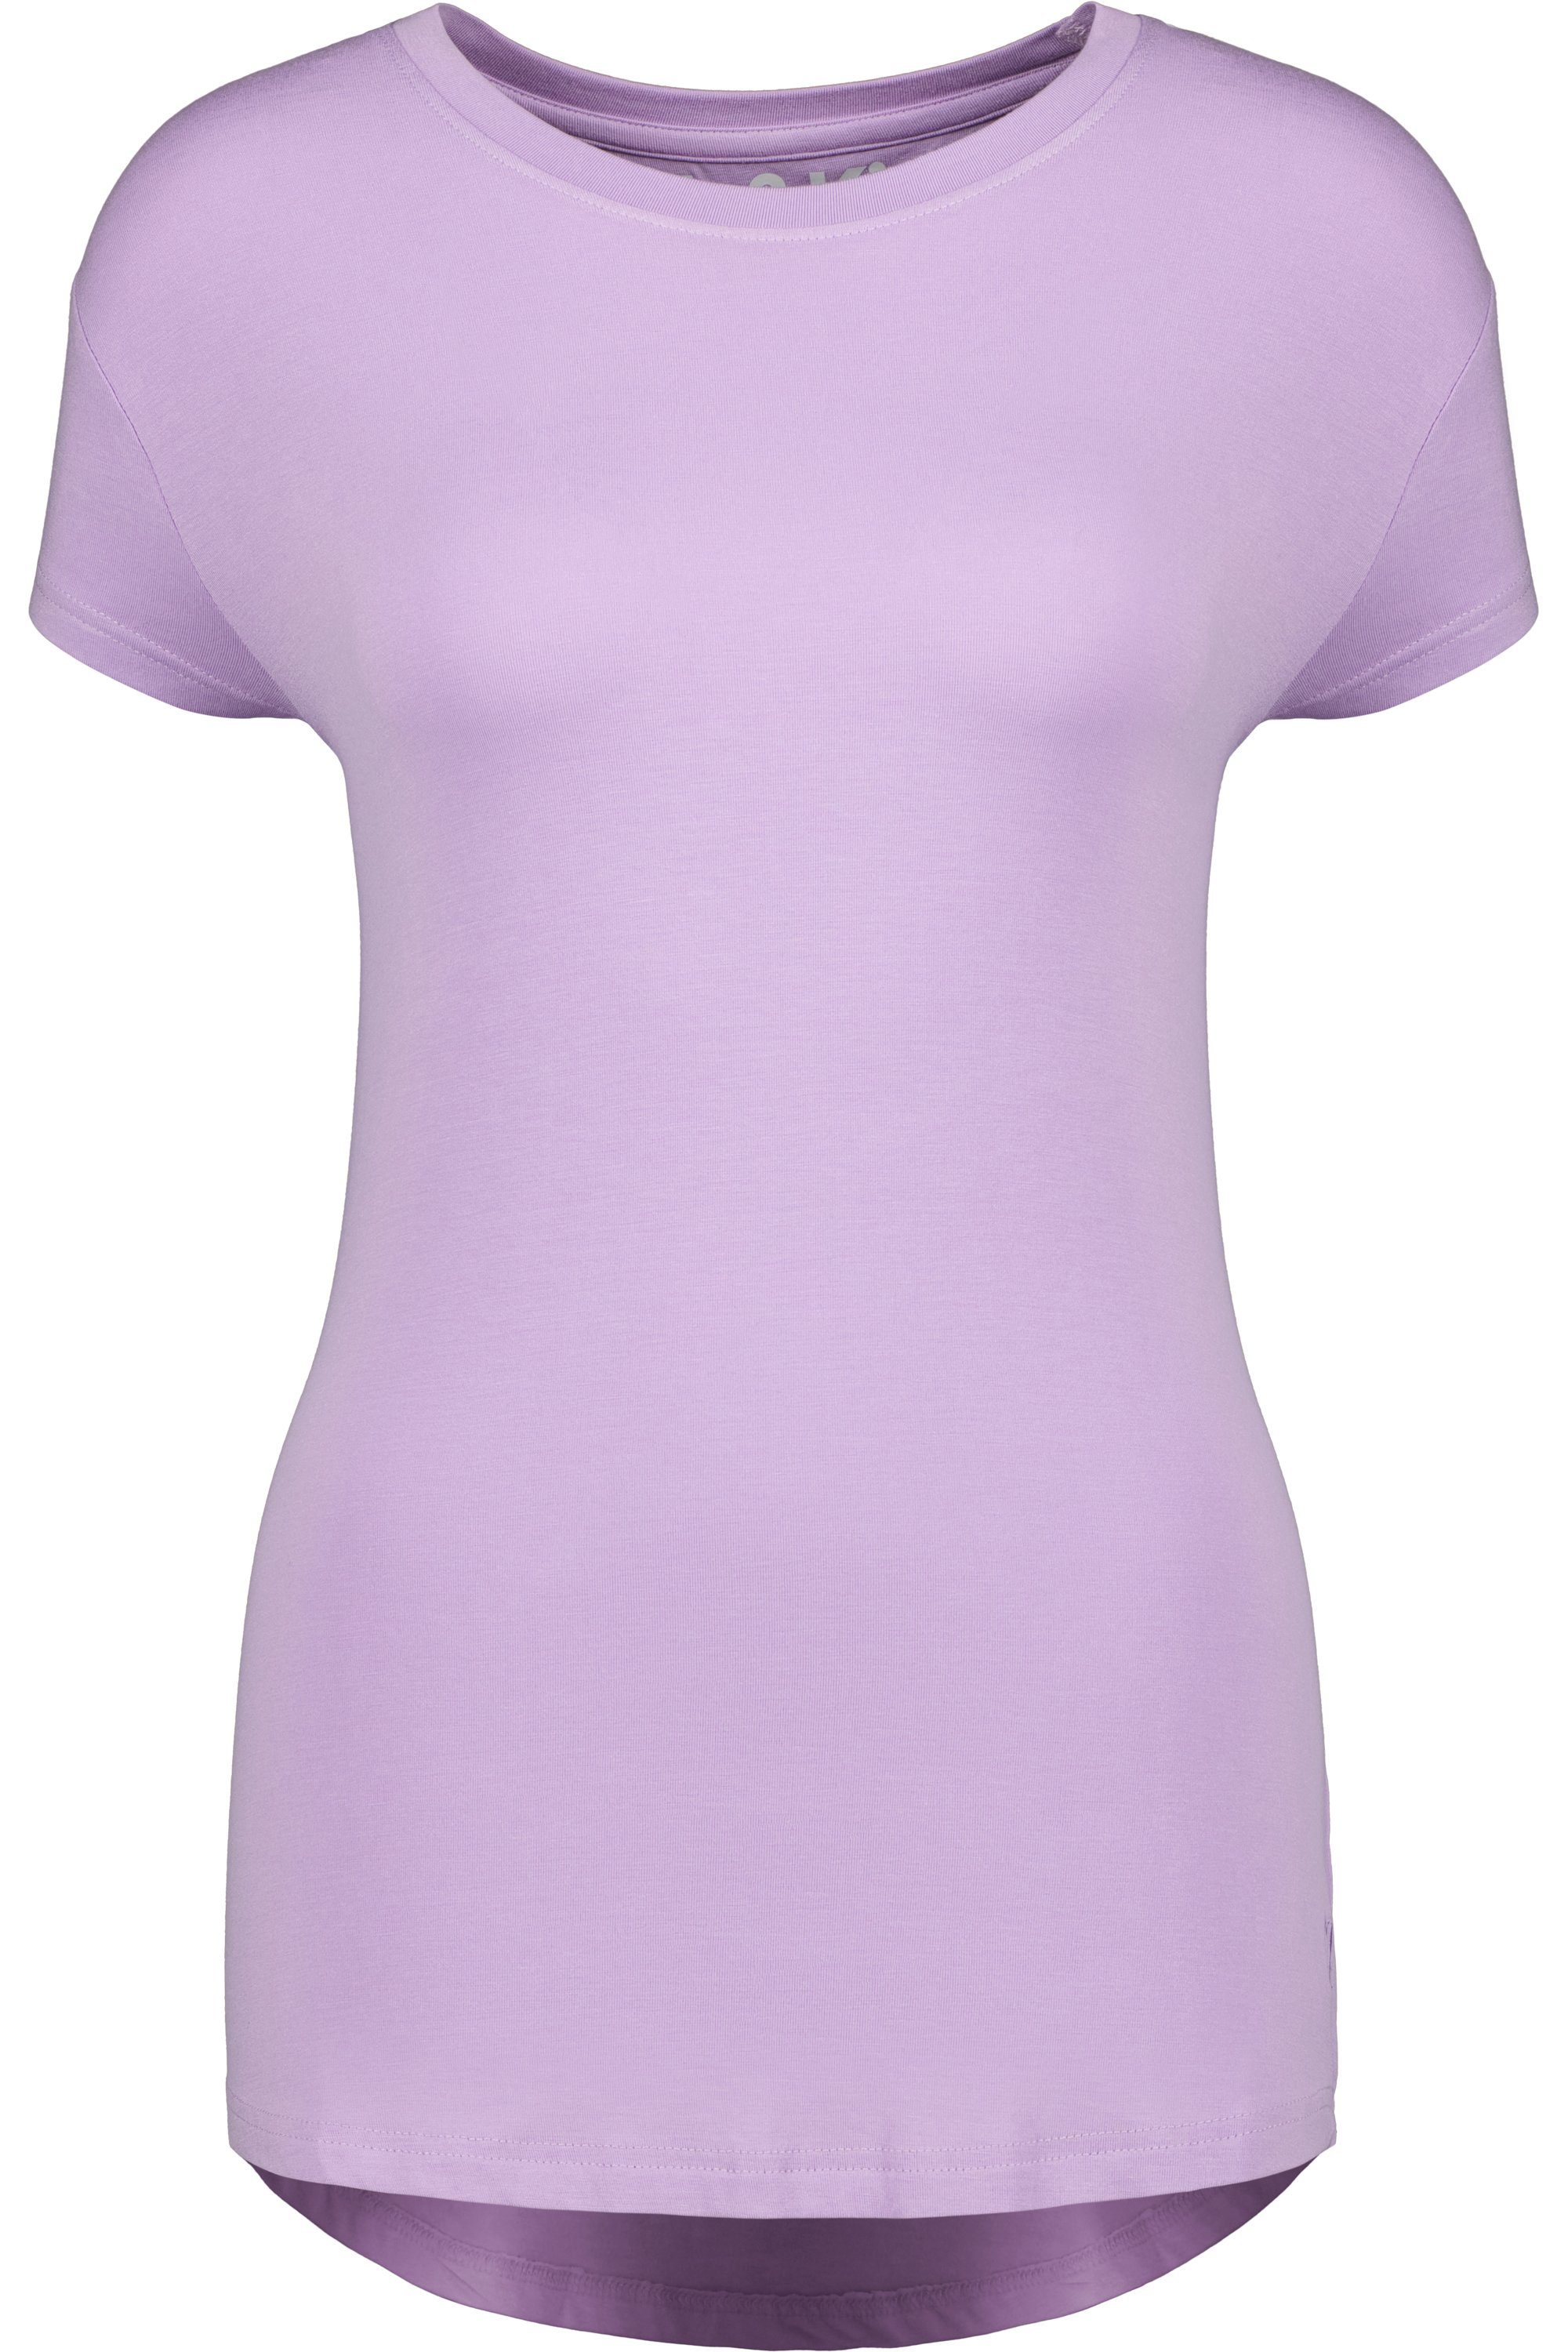 Alife & Kickin Kurzarmshirt, Damen MimmyAK Shirt Shirt lavender digital A Rundhalsshirt